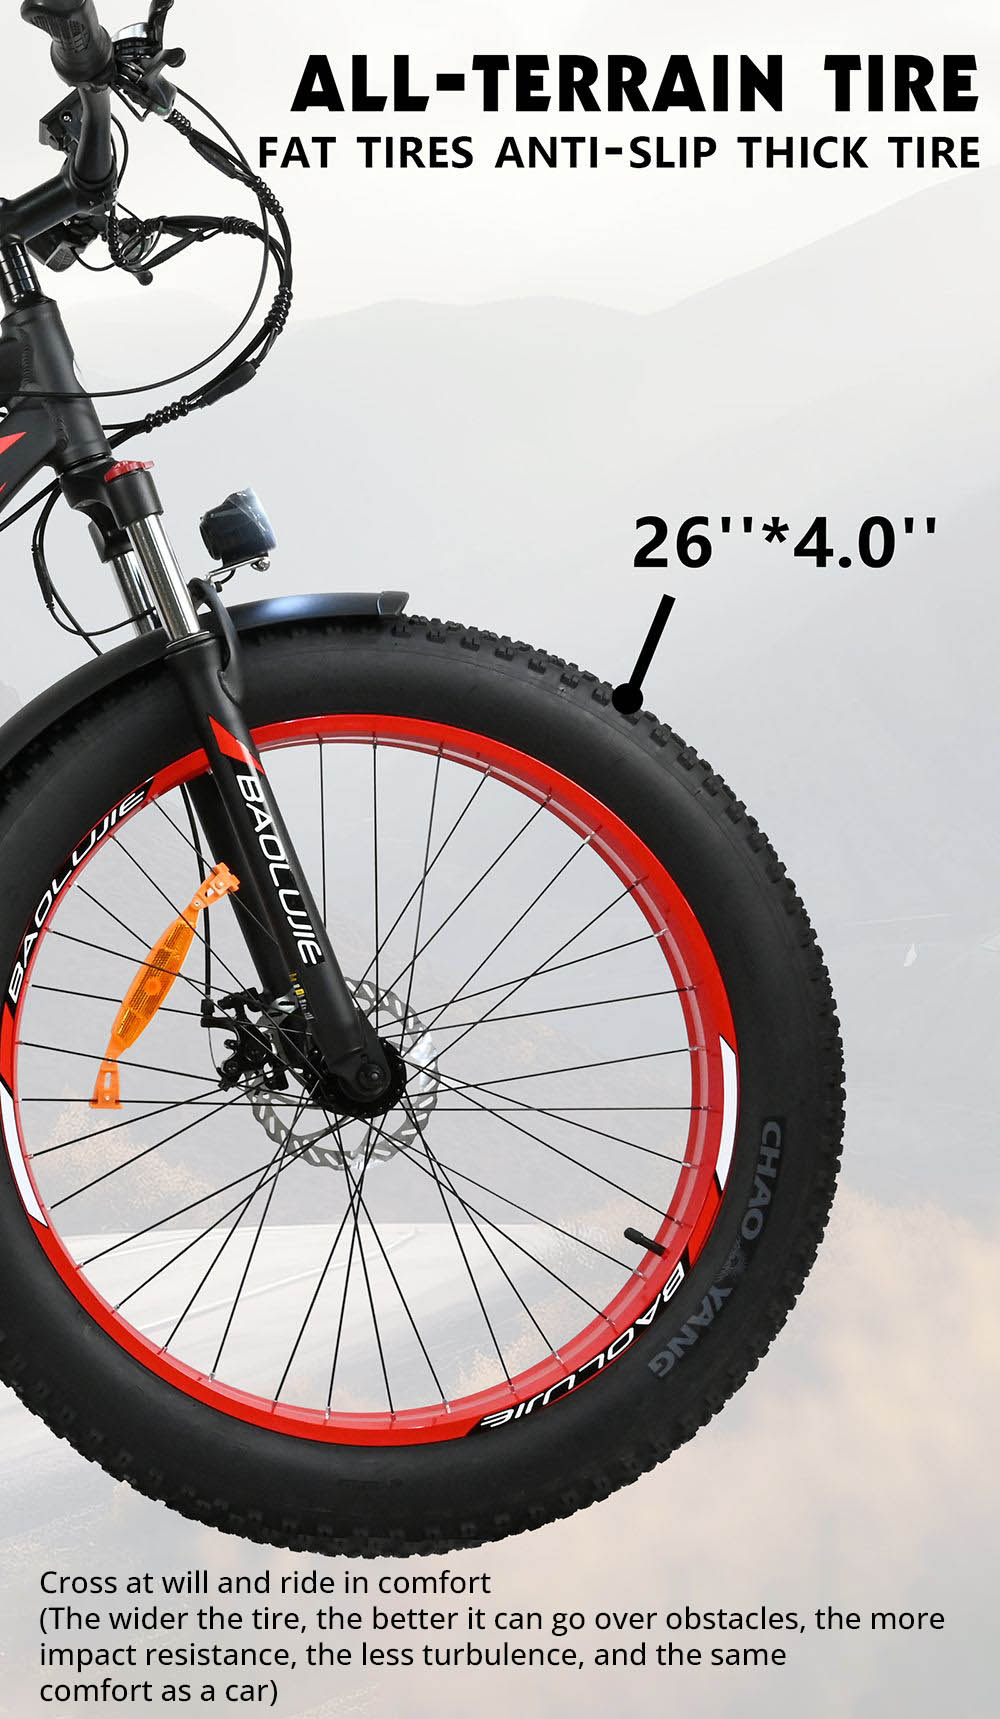 Bicicleta elétrica BAOLUJIE DP2619, pneu gordo de 26 * 4.0 polegadas 750W Motor 48V 13Ah Bateria 45km / h Velocidade máxima 45km Alcance máximo SHIMANO Visor LCD de 7 velocidades - Azul